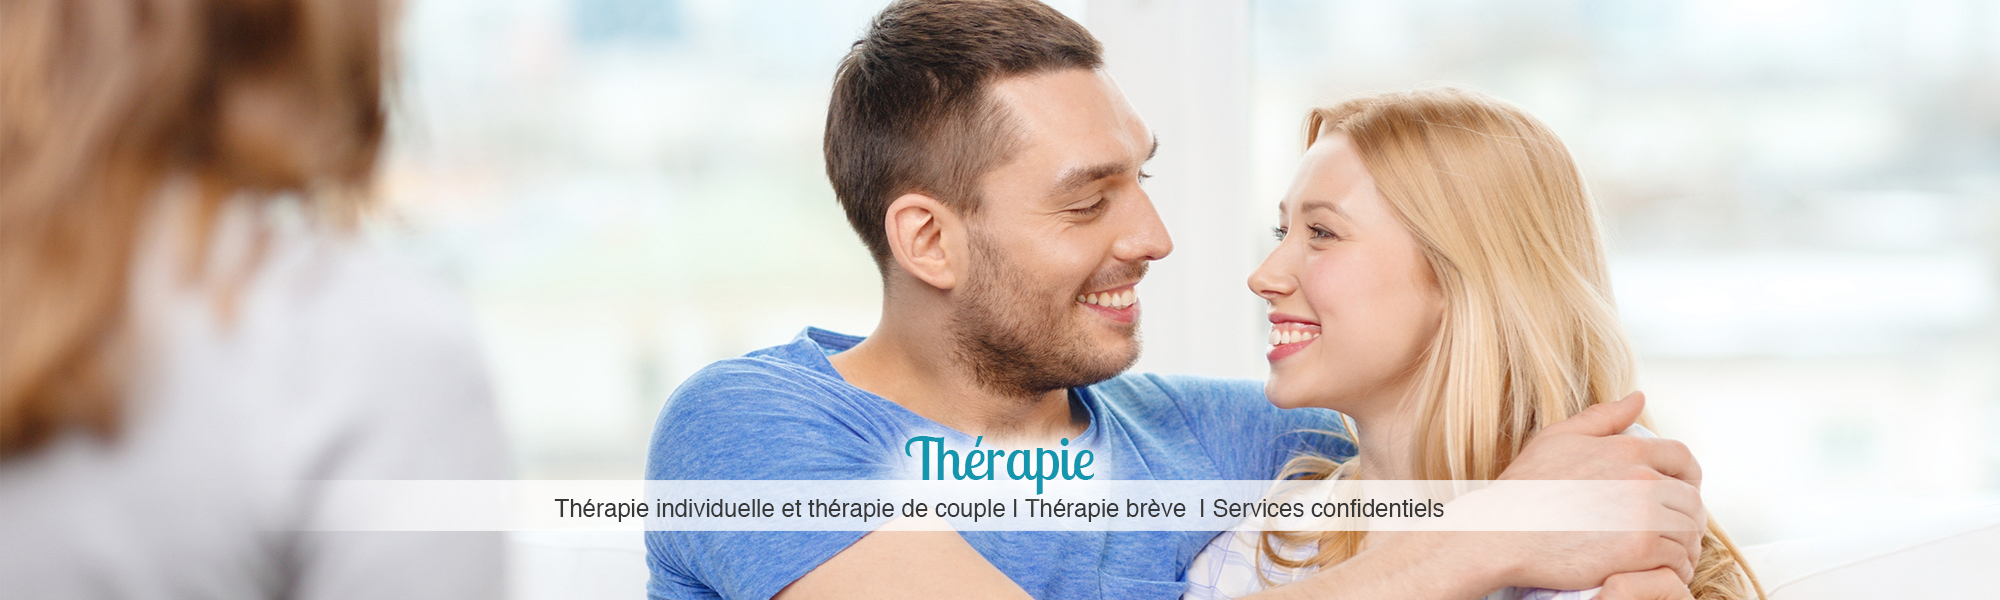 Thérapie : Thérapie individuelle et thérapie de couple | Thérapie brève | Services confidentiels